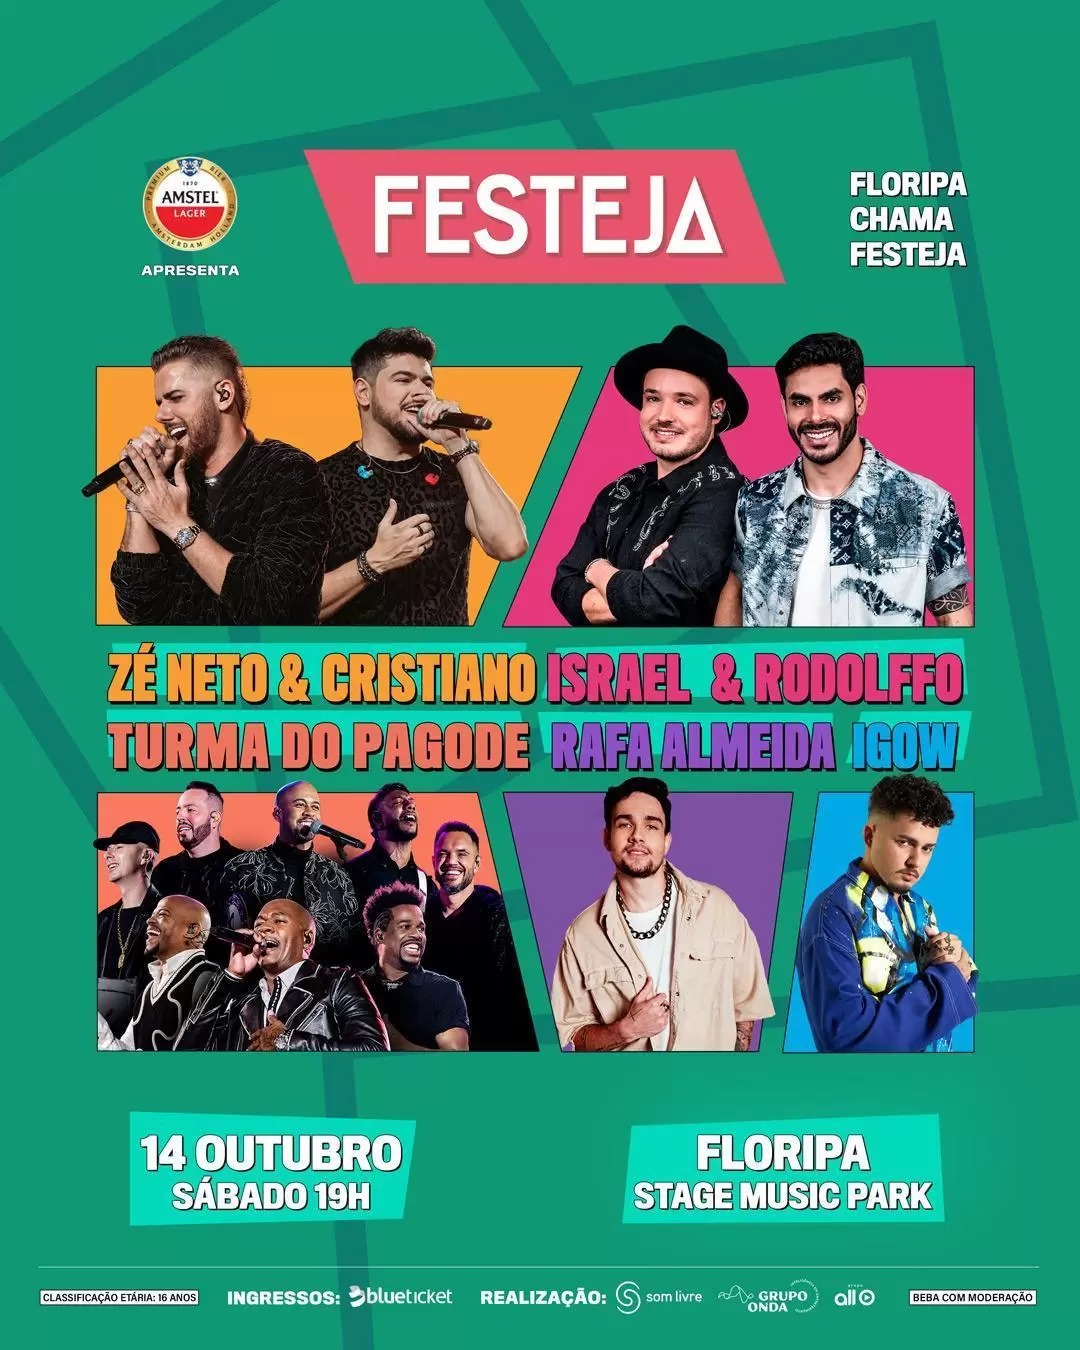 Festeja Florianópolis chega ao palco do Stage Music Park com grandes nomes do sertanejo e do pagode no dia 14 de outubro